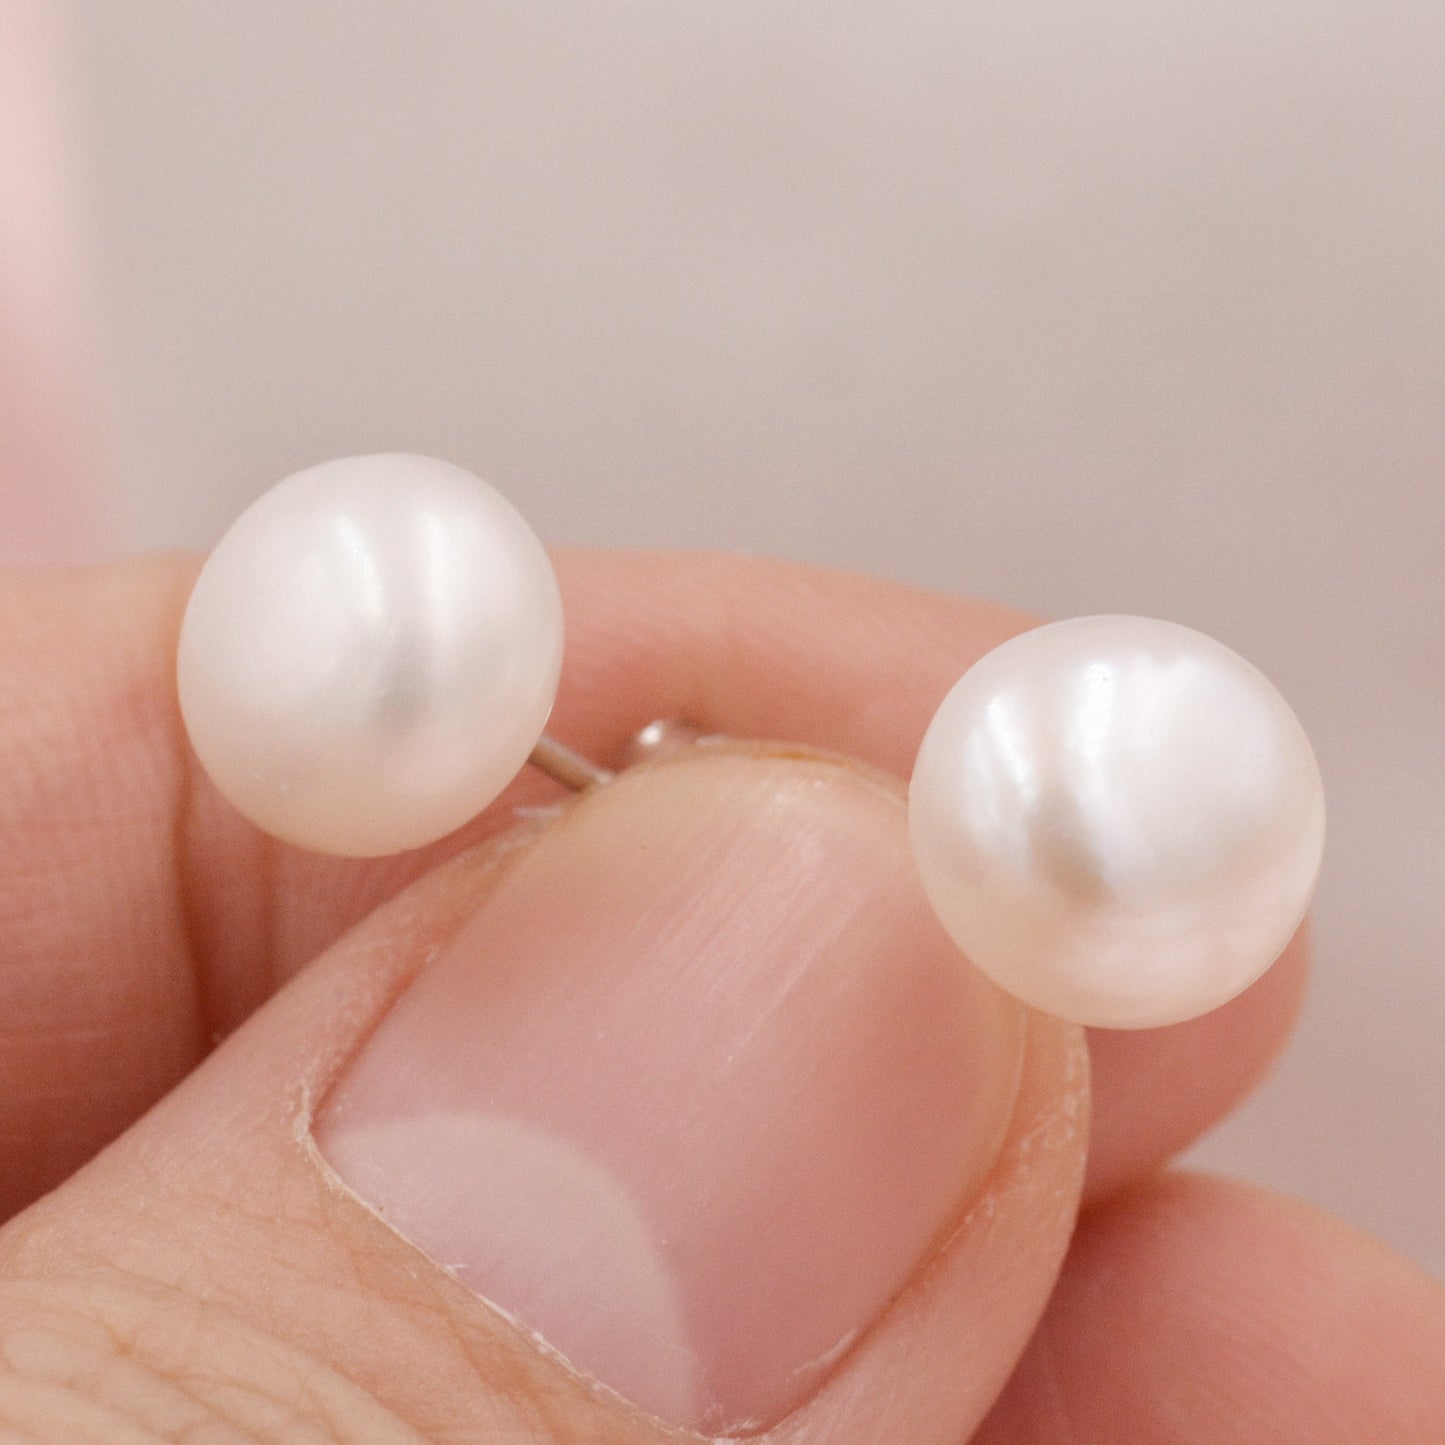 Genuine Pearl Stud Earrings in Sterling Silver, 5mm - 8mm, Small Pearl Stud and Large Pearl Stud, Silver pearl Earrings,